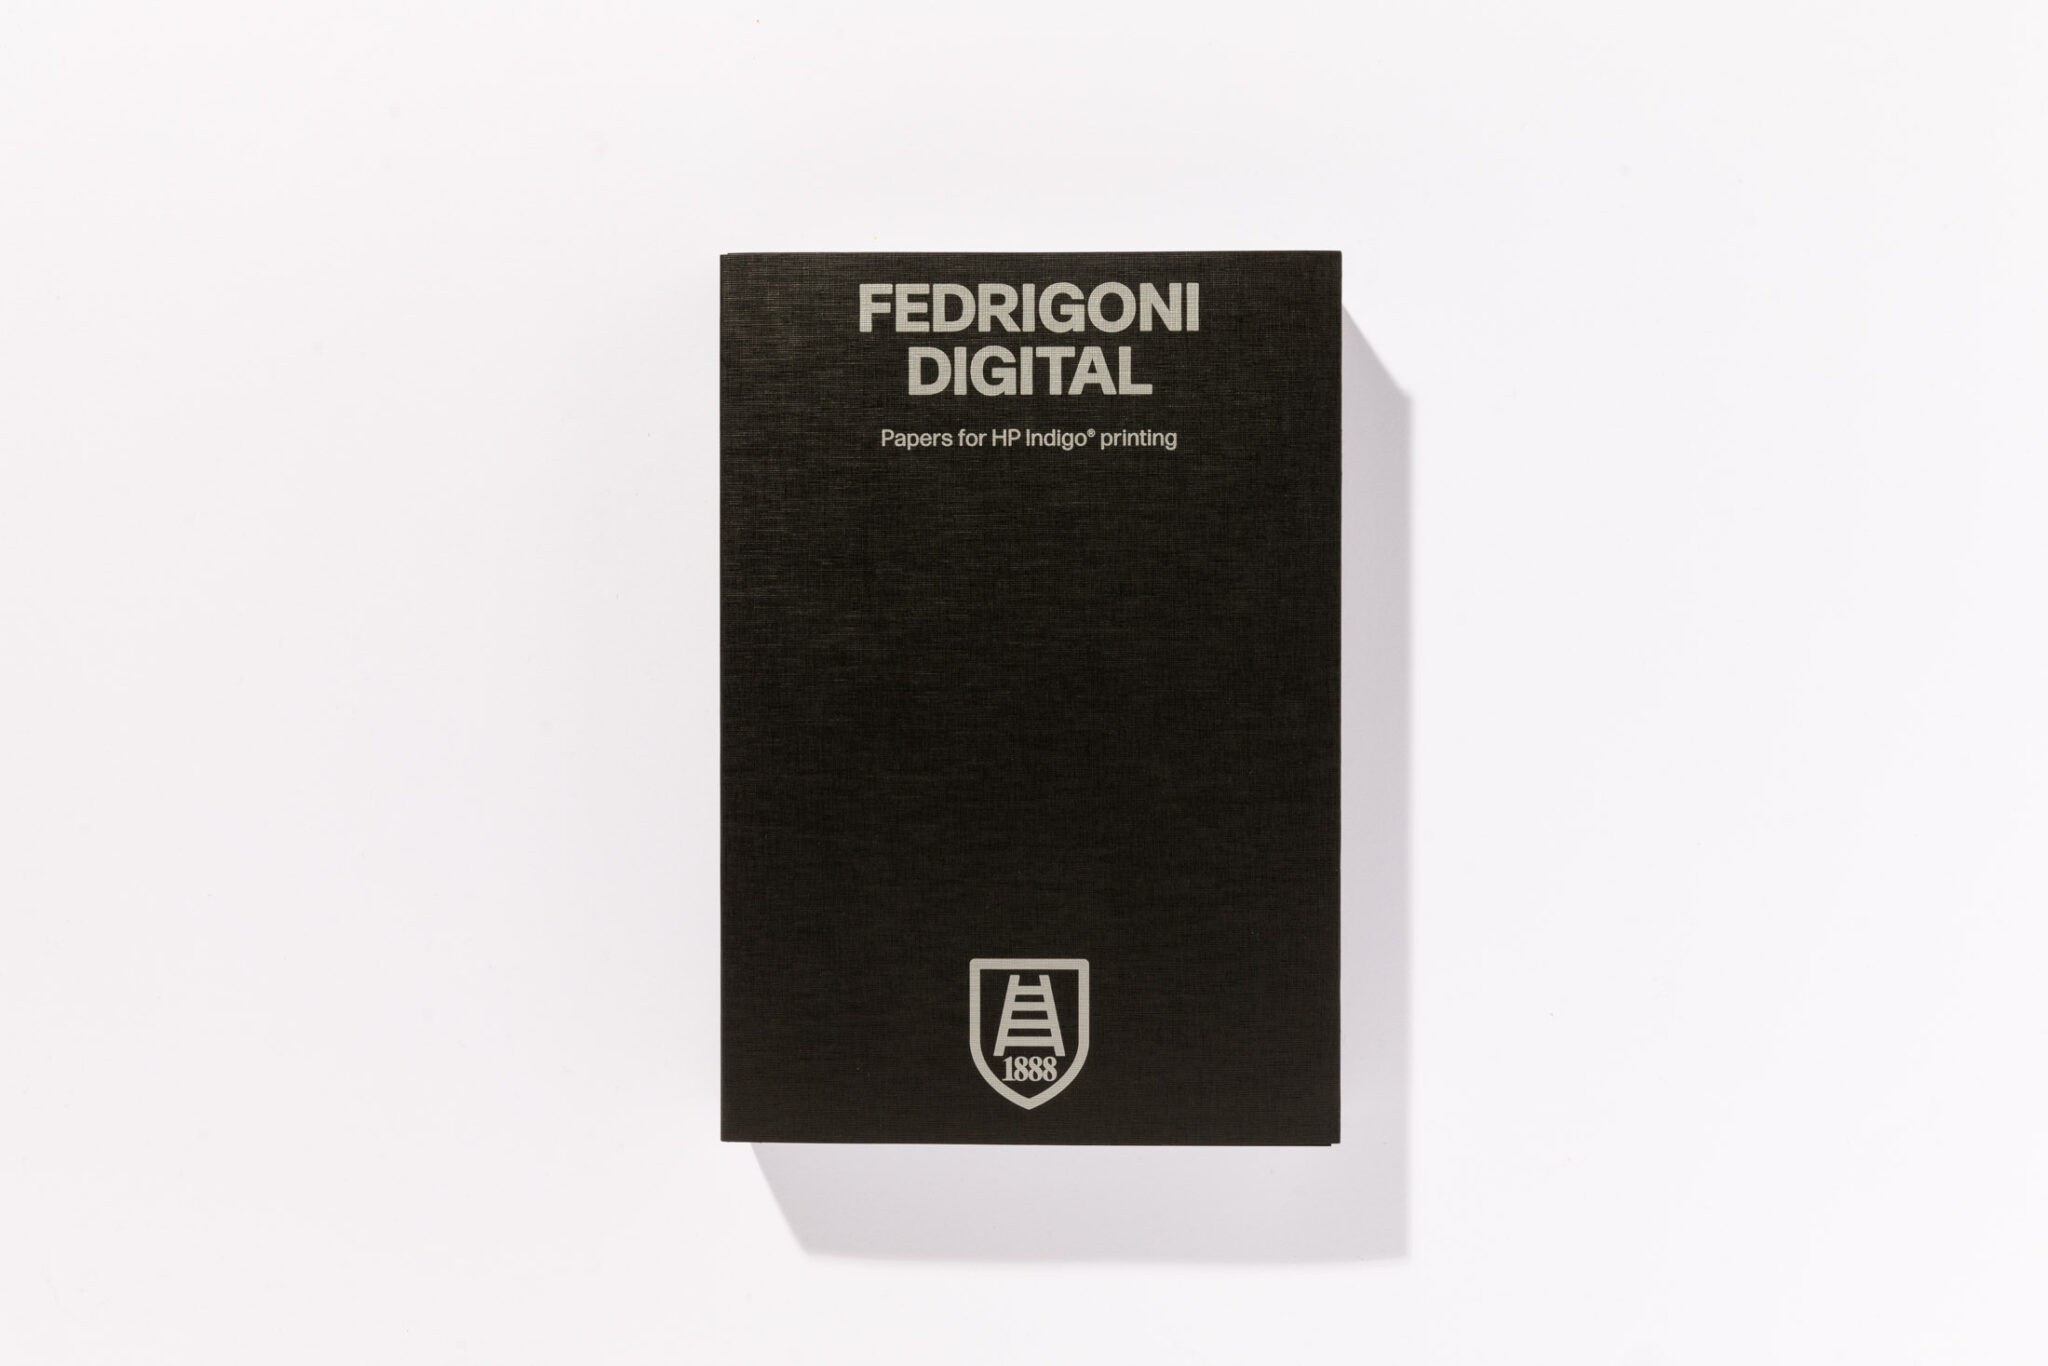 Fedrigoni Digital